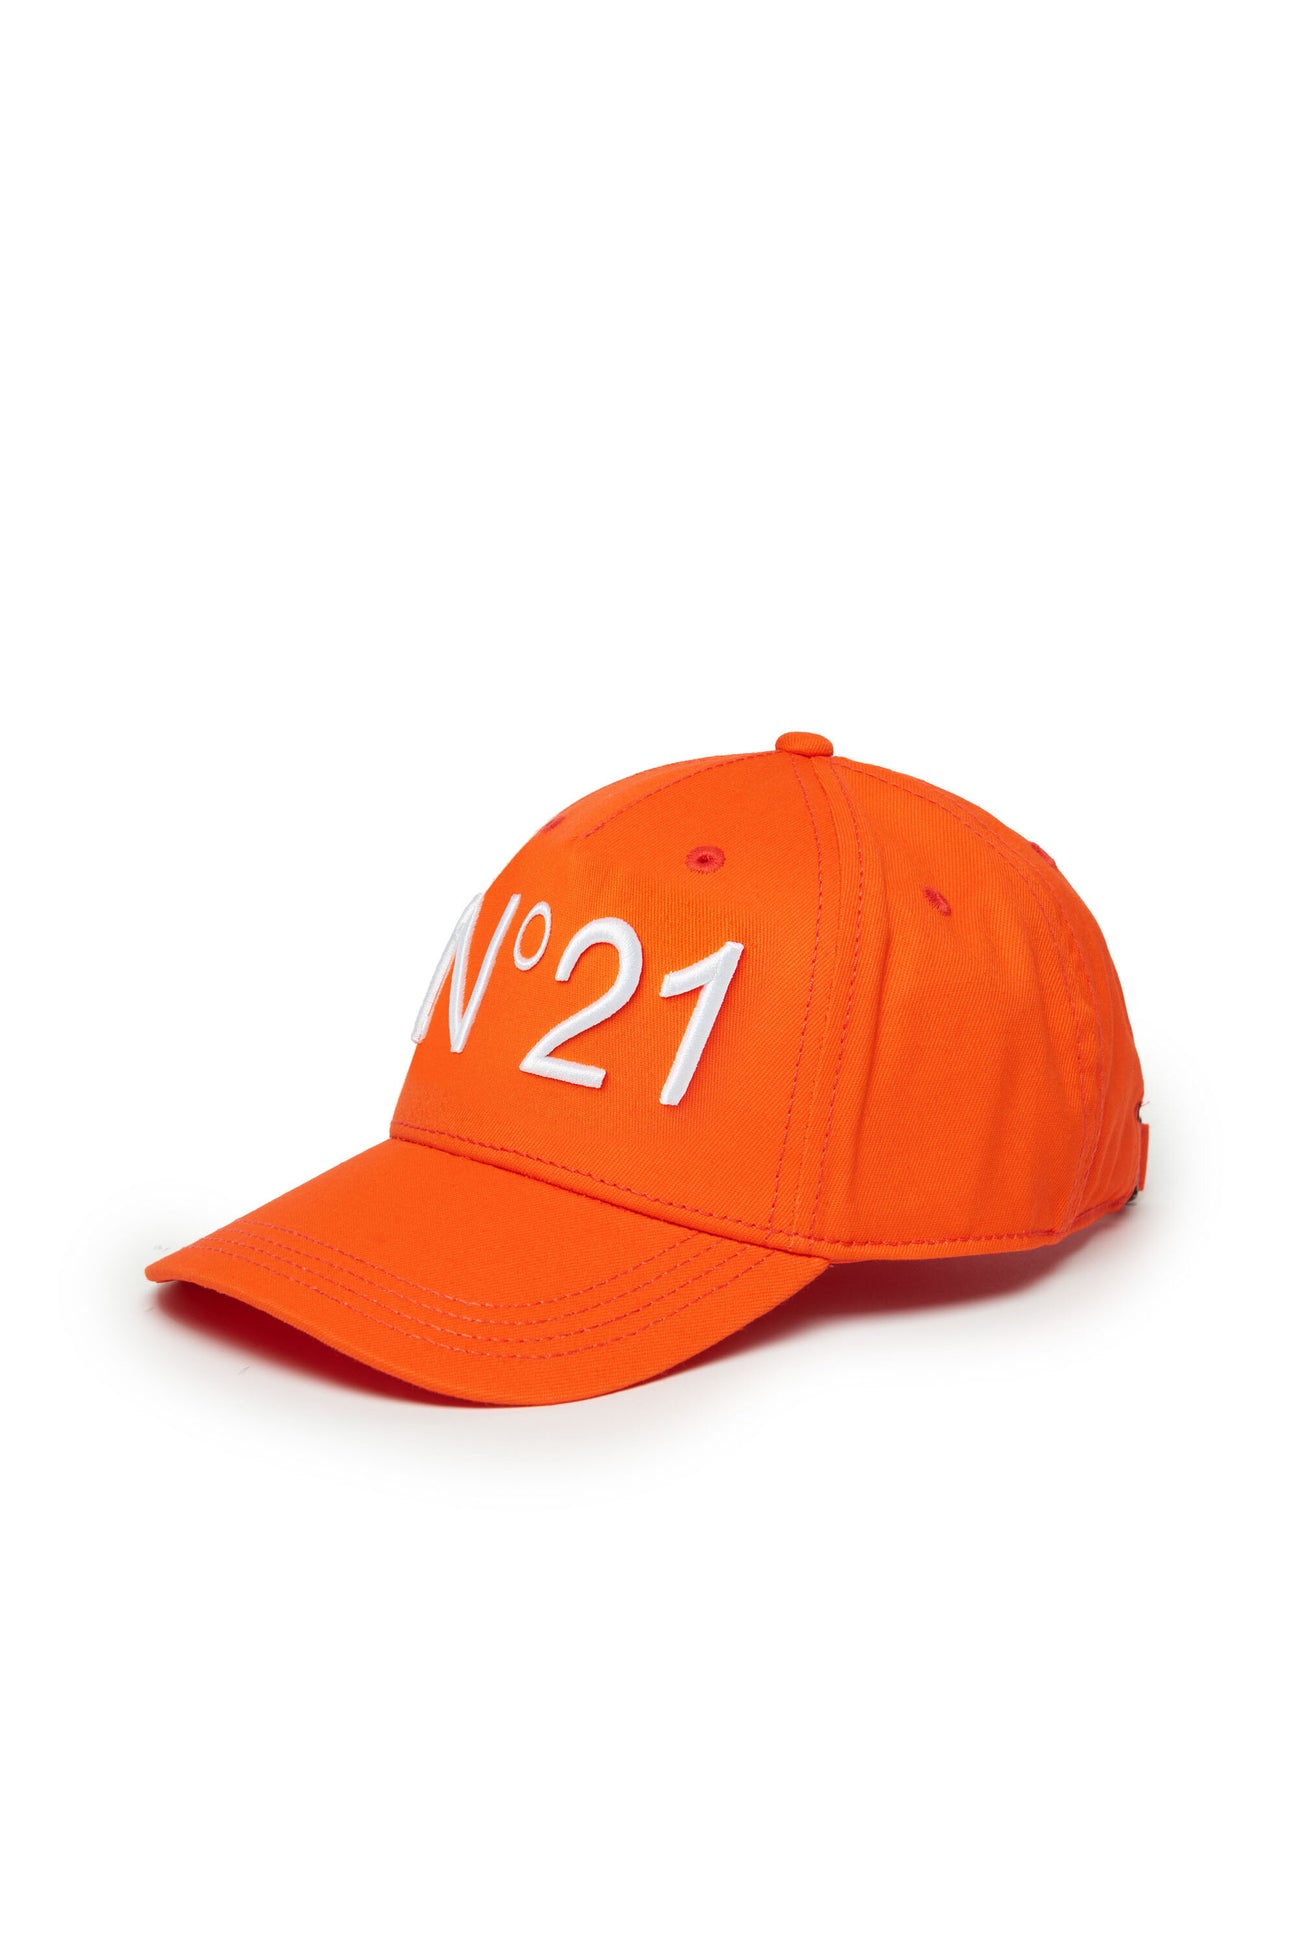 Gorra de béisbol de gabardina naranja fluorescente con logotipo 